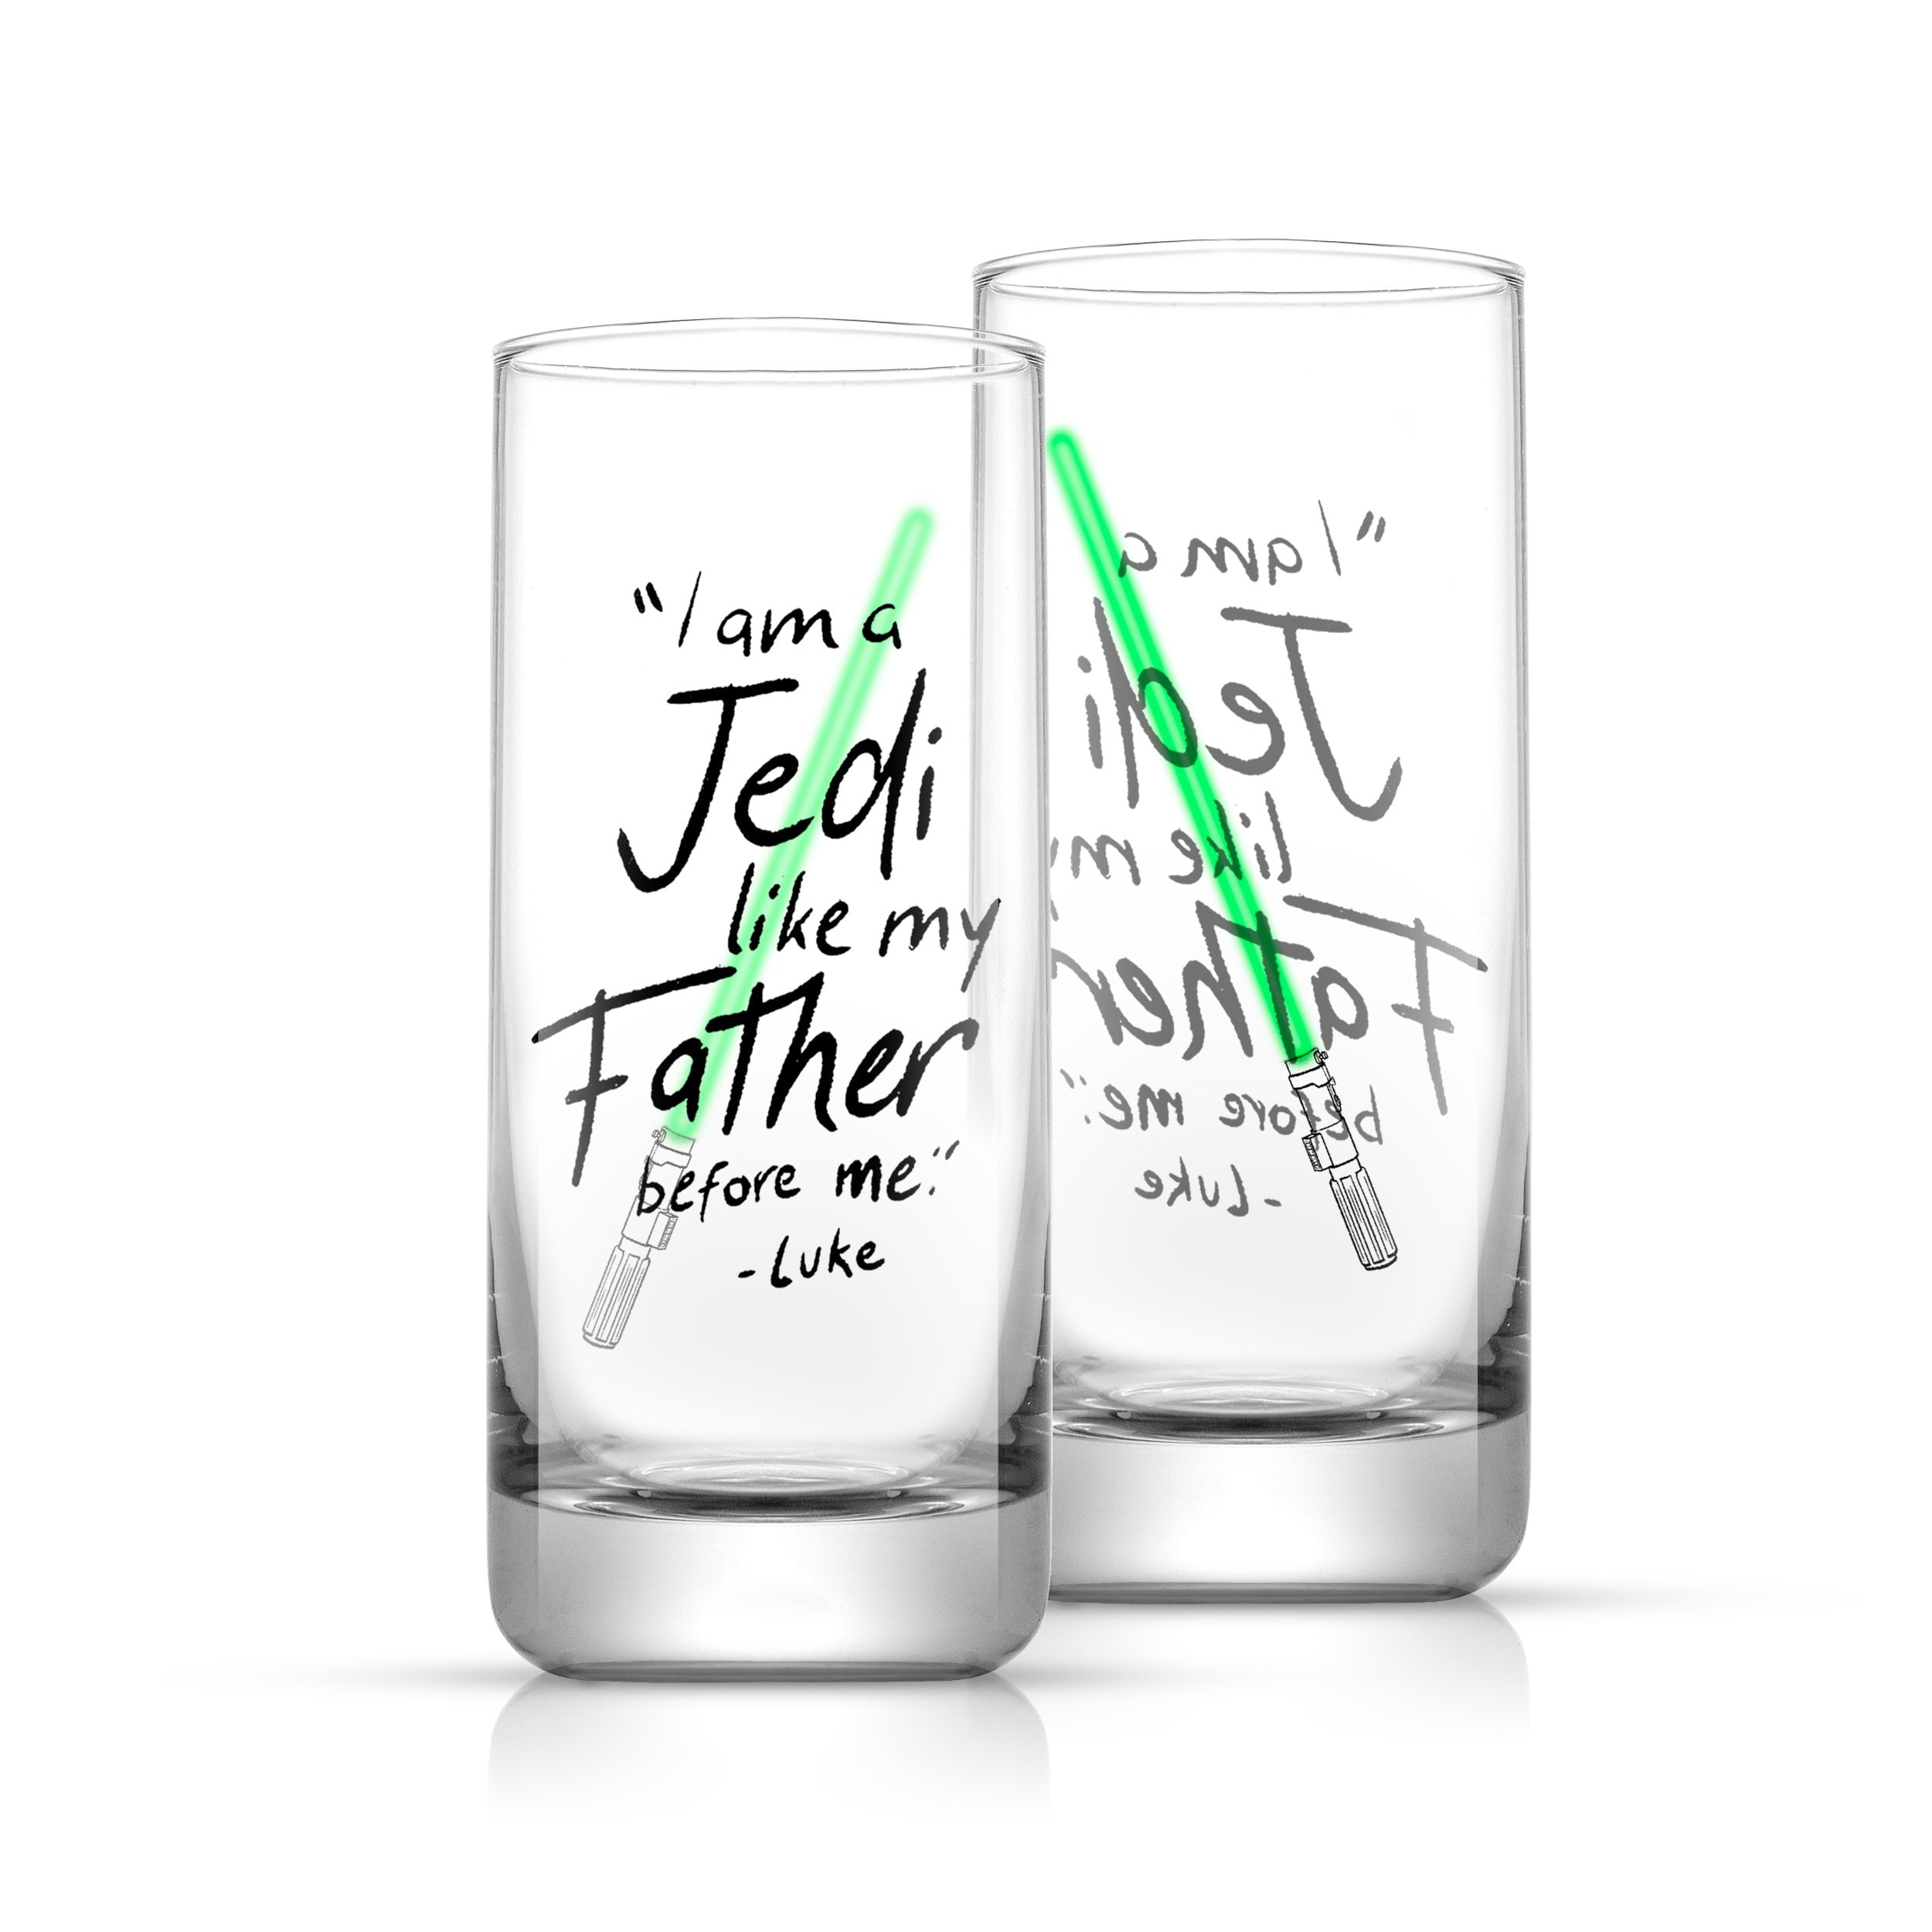 Star Wars Darth Vader Lightsaber Short Drinking Glass - 10 oz